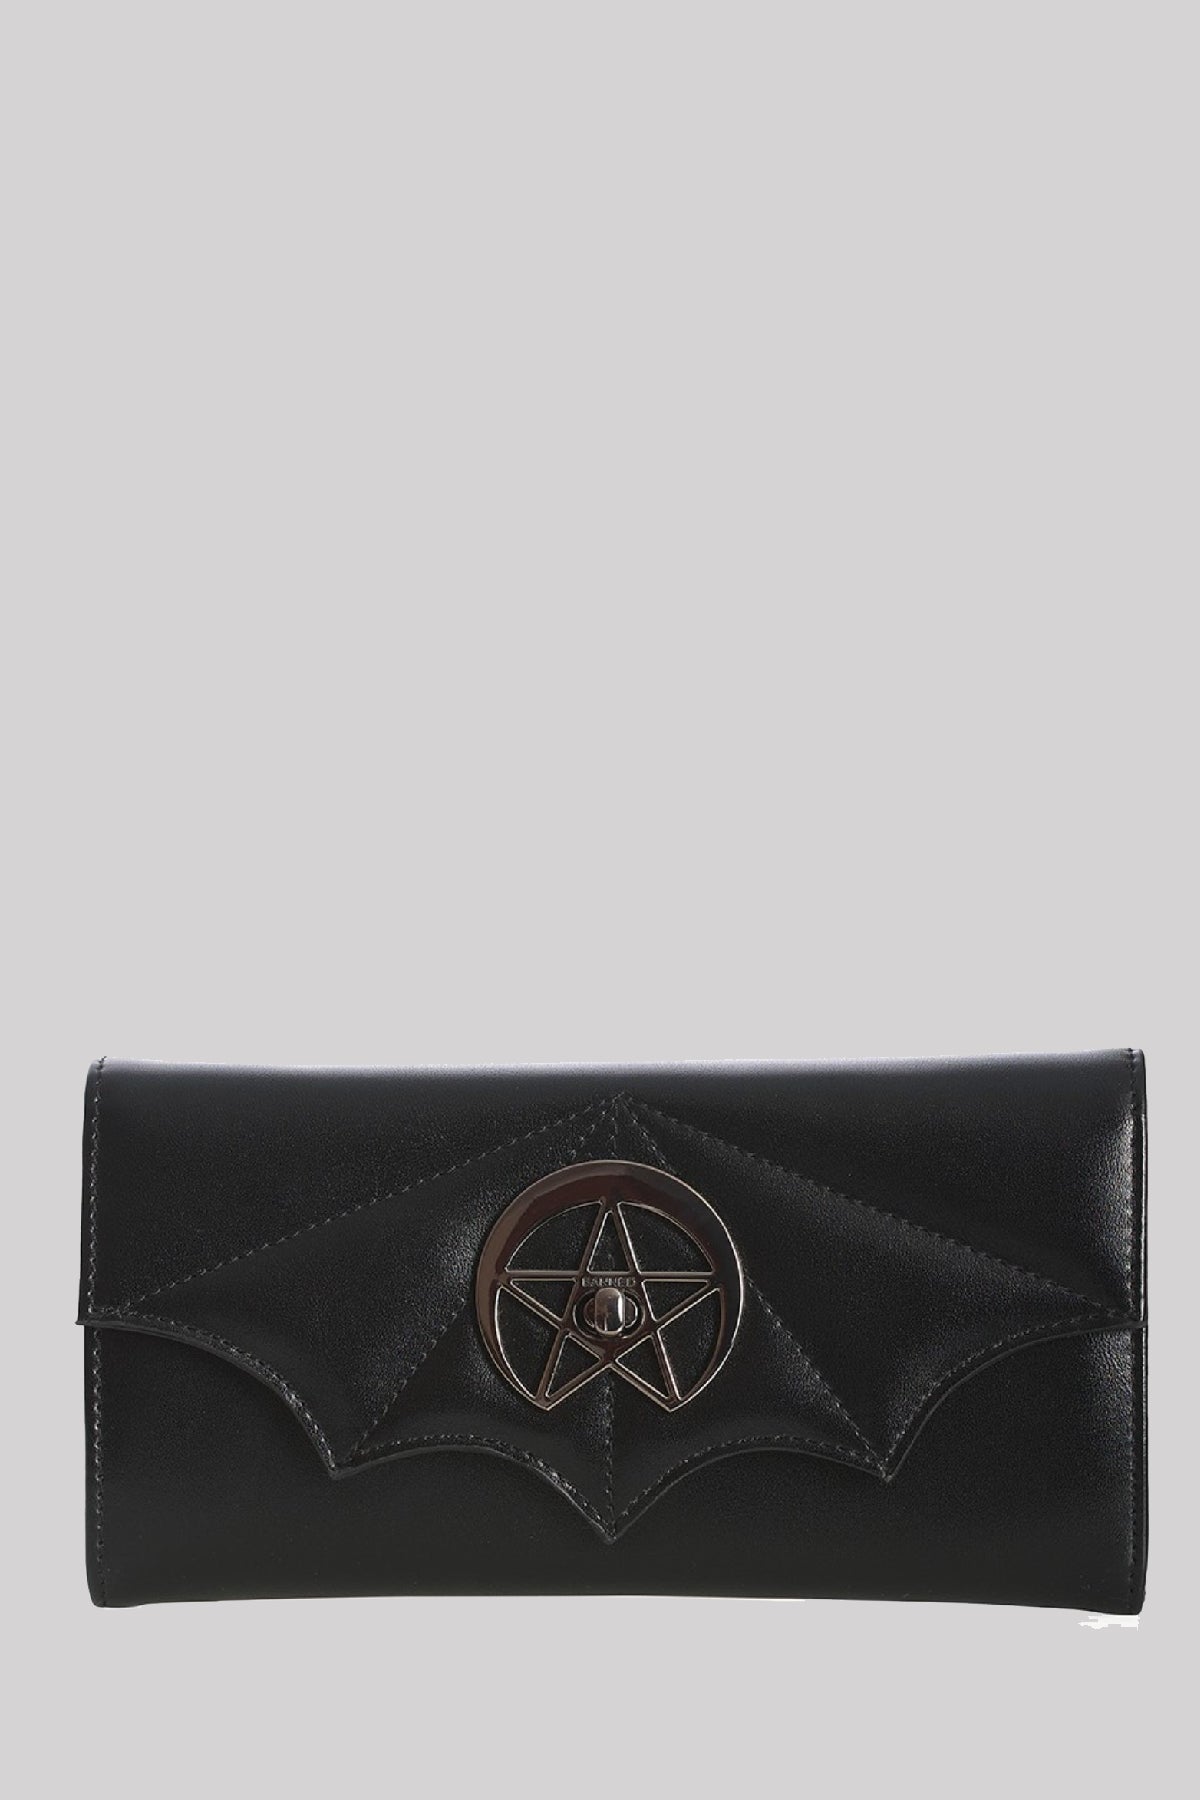 Banned Dreamcatcher Gothic Bat Pentagram Wallet